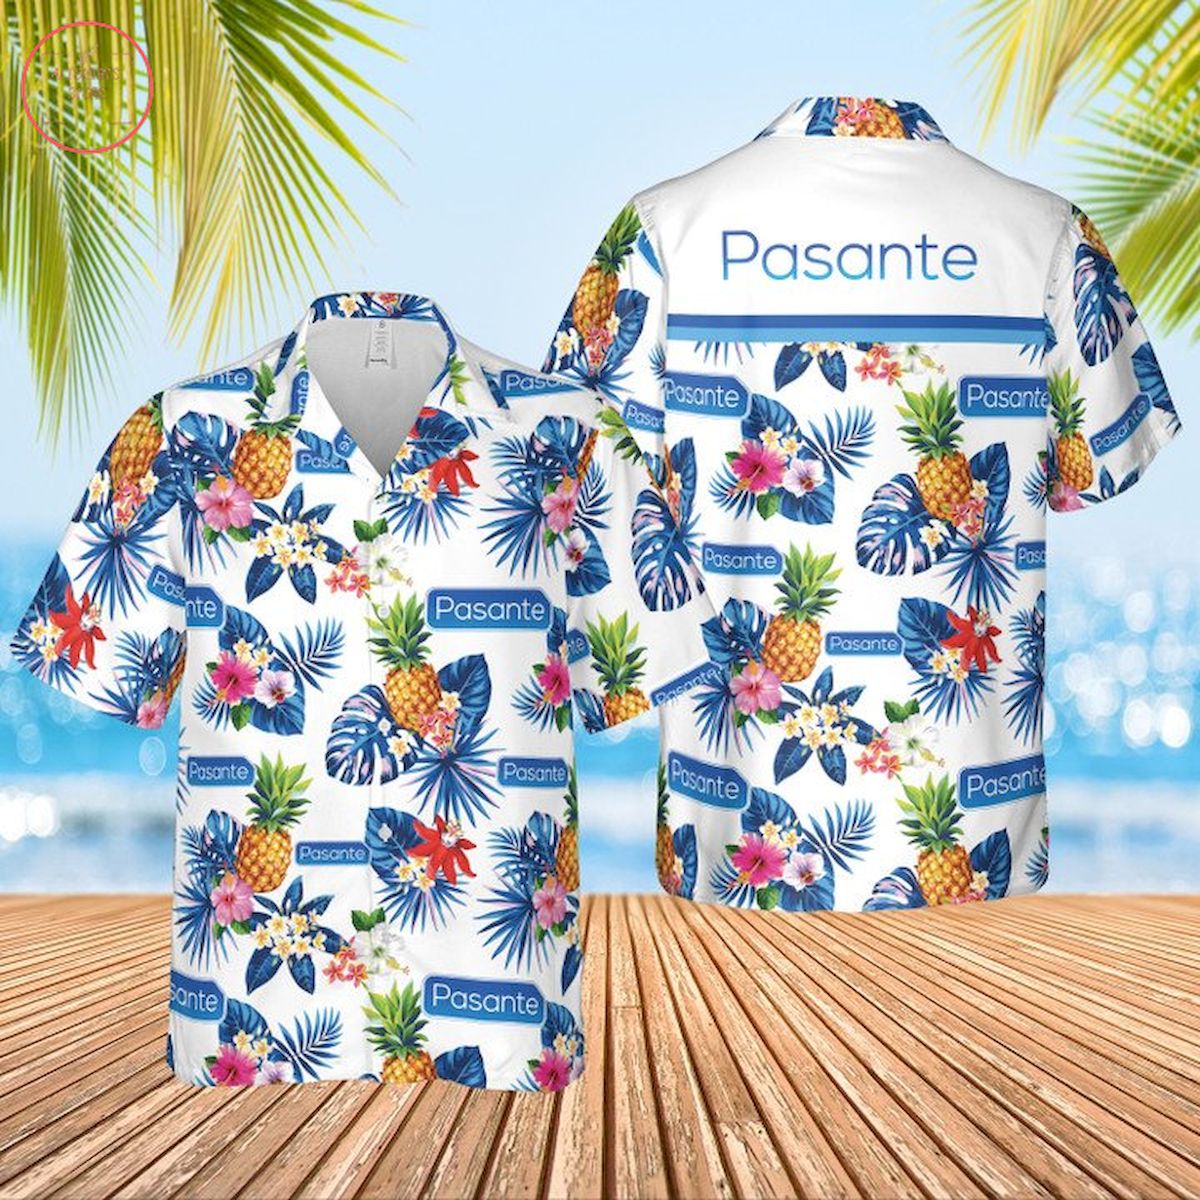 Pasante Condoms Hawaiian Shirt and Shorts